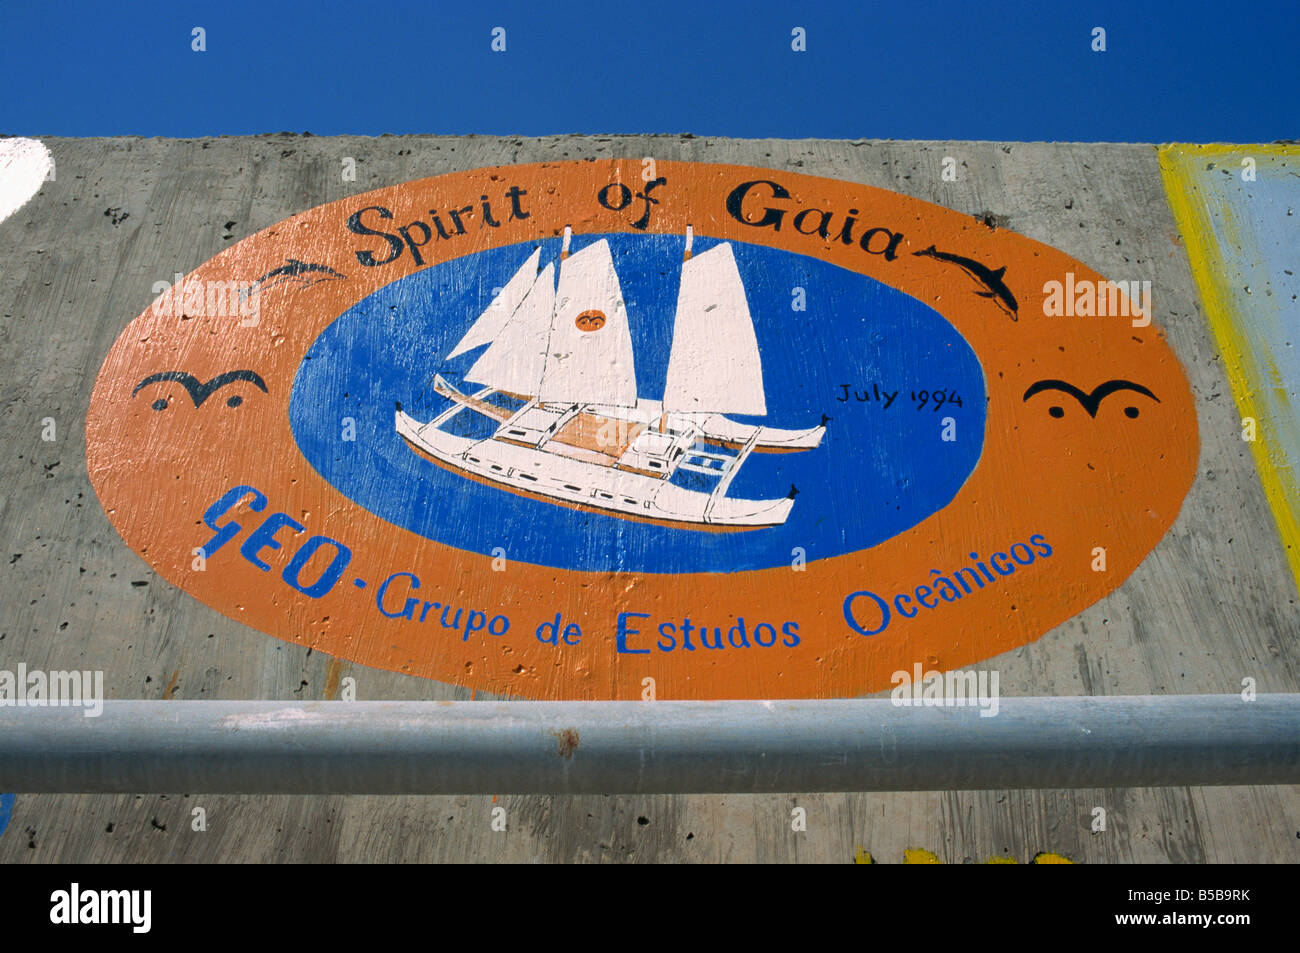 Deich am Hafen, dekoriert mit bildhaften Erinnerungen an Boot s besuchen Porto Santo Insel Madeira Portugal Atlantik Europa Stockfoto